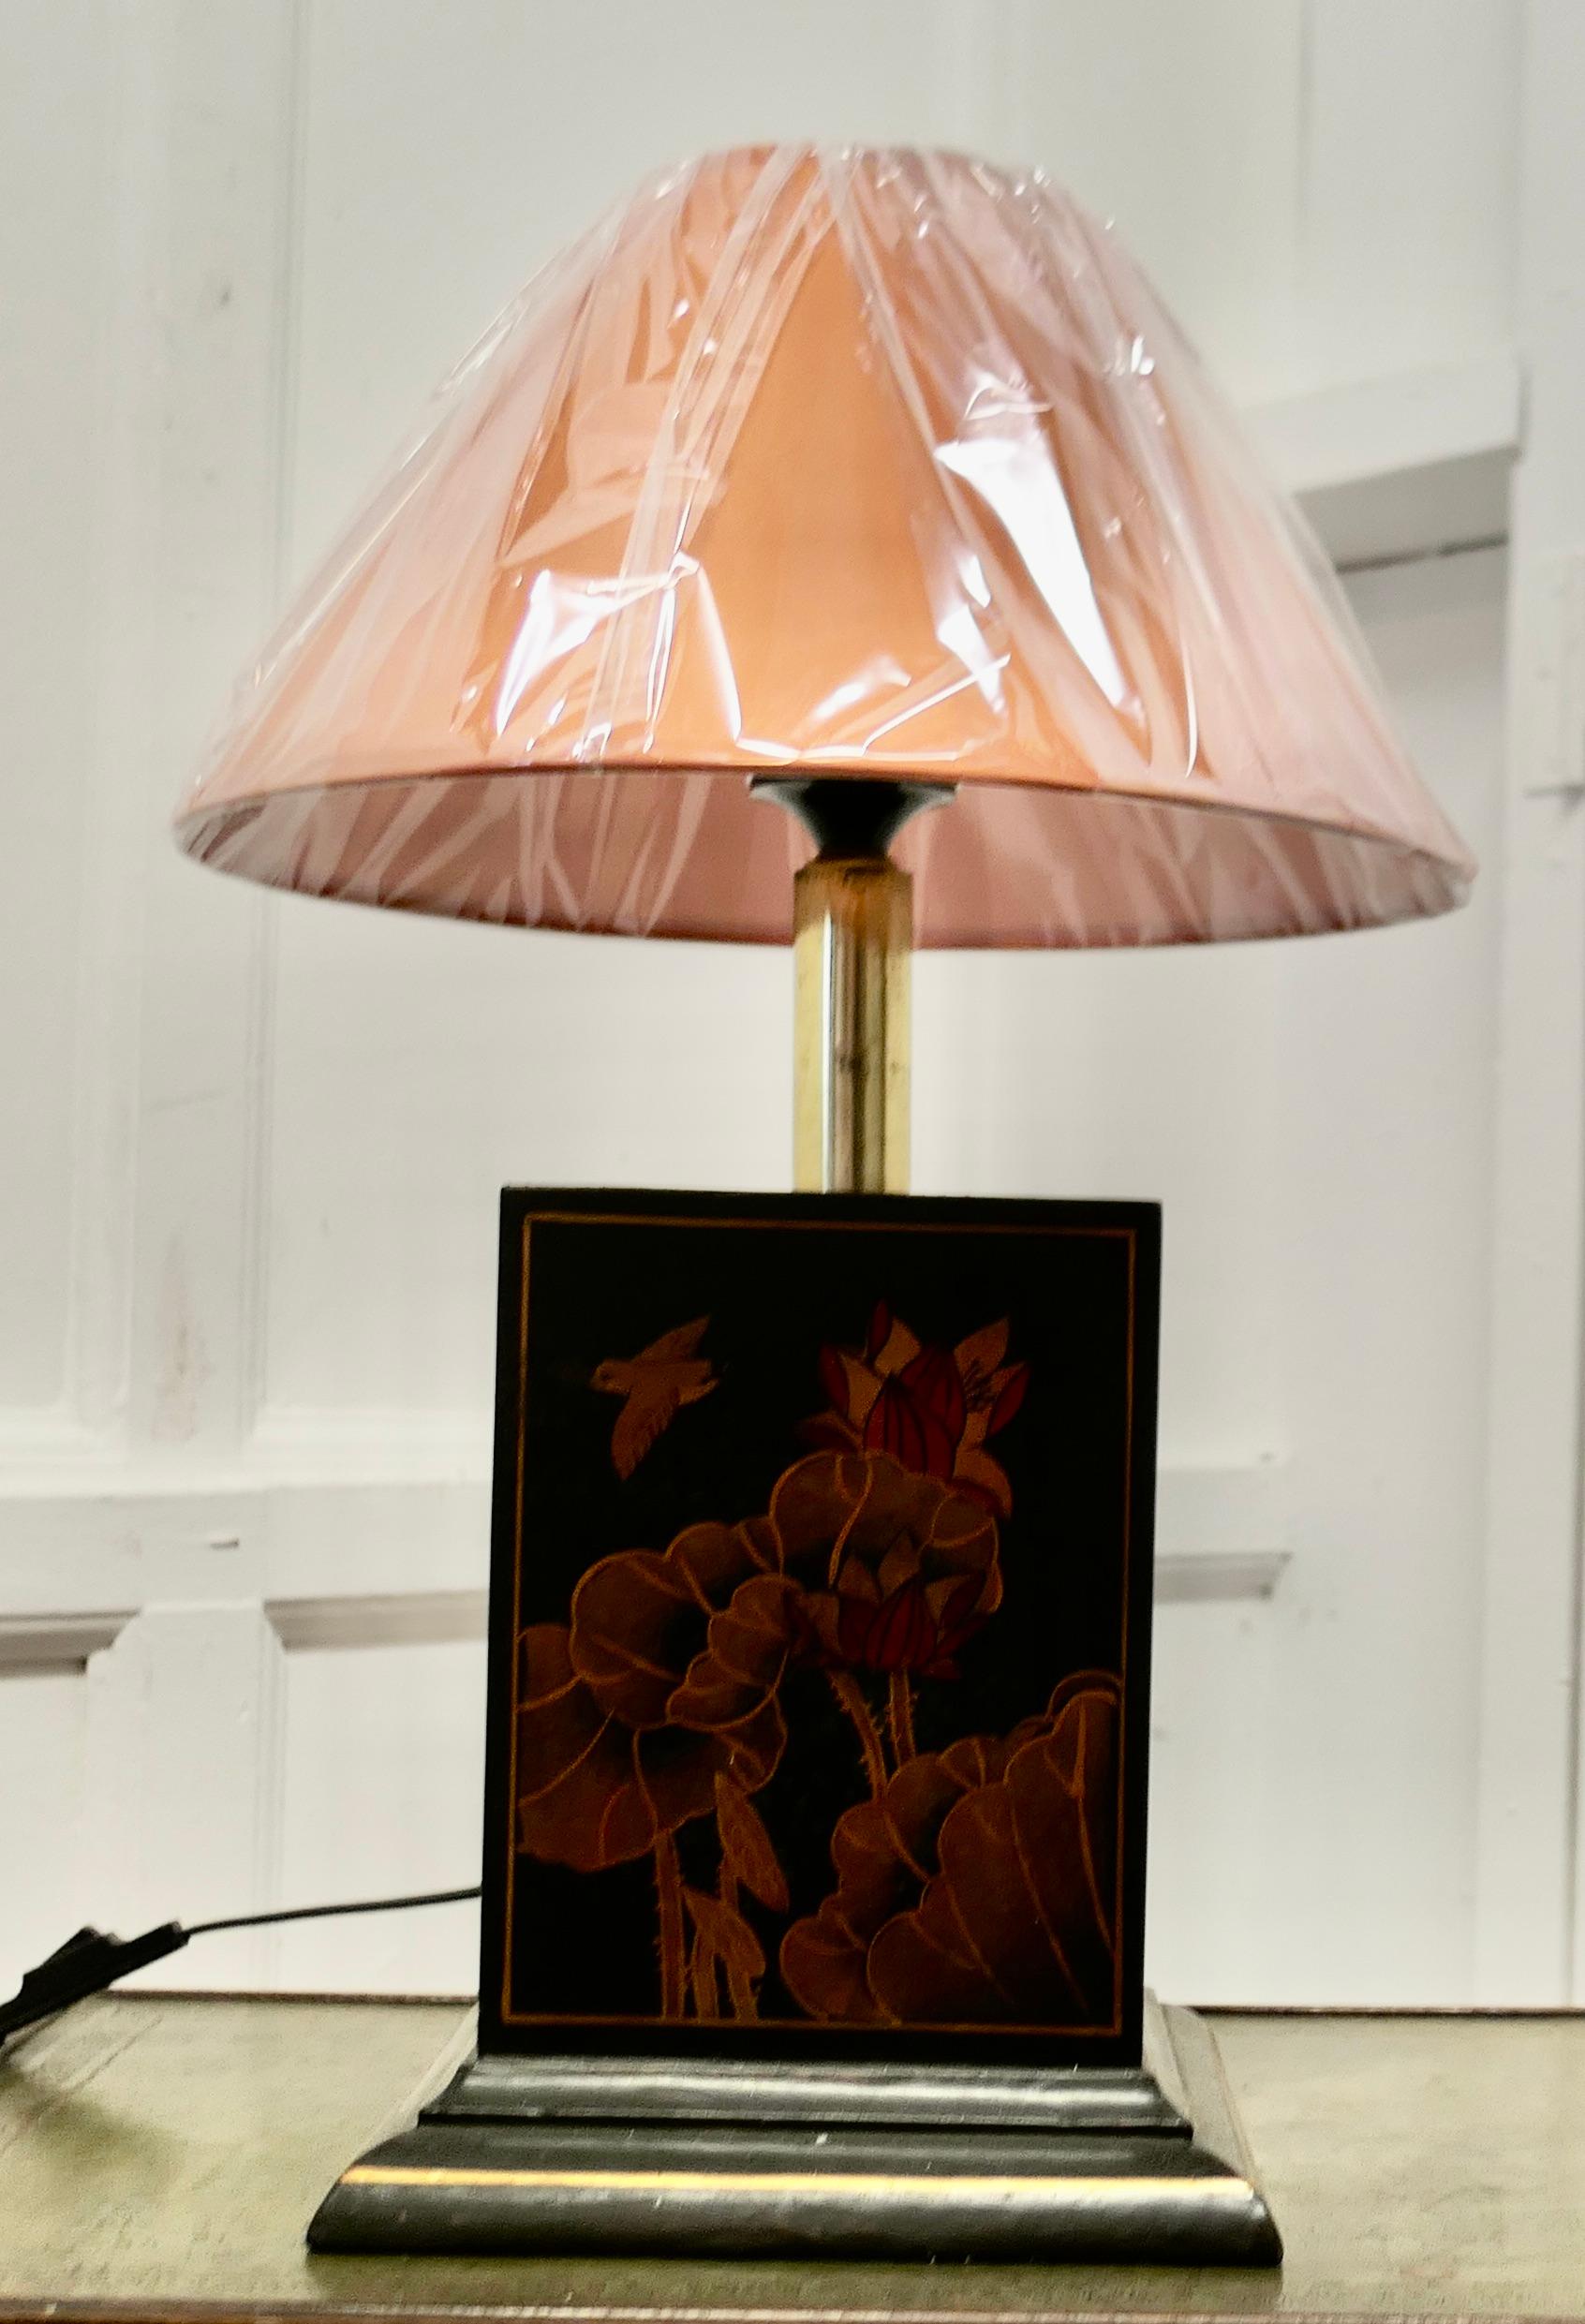 Grande lampe d'appoint cubique orientale en laque

La lampe est fabriquée en bois et en laiton, elle est laquée en noir avec des fleurs et des oiseaux dans les tons de Sienne, la lampe est livrée avec un nouvel abat-jour Coolie.
Tout fonctionne et a